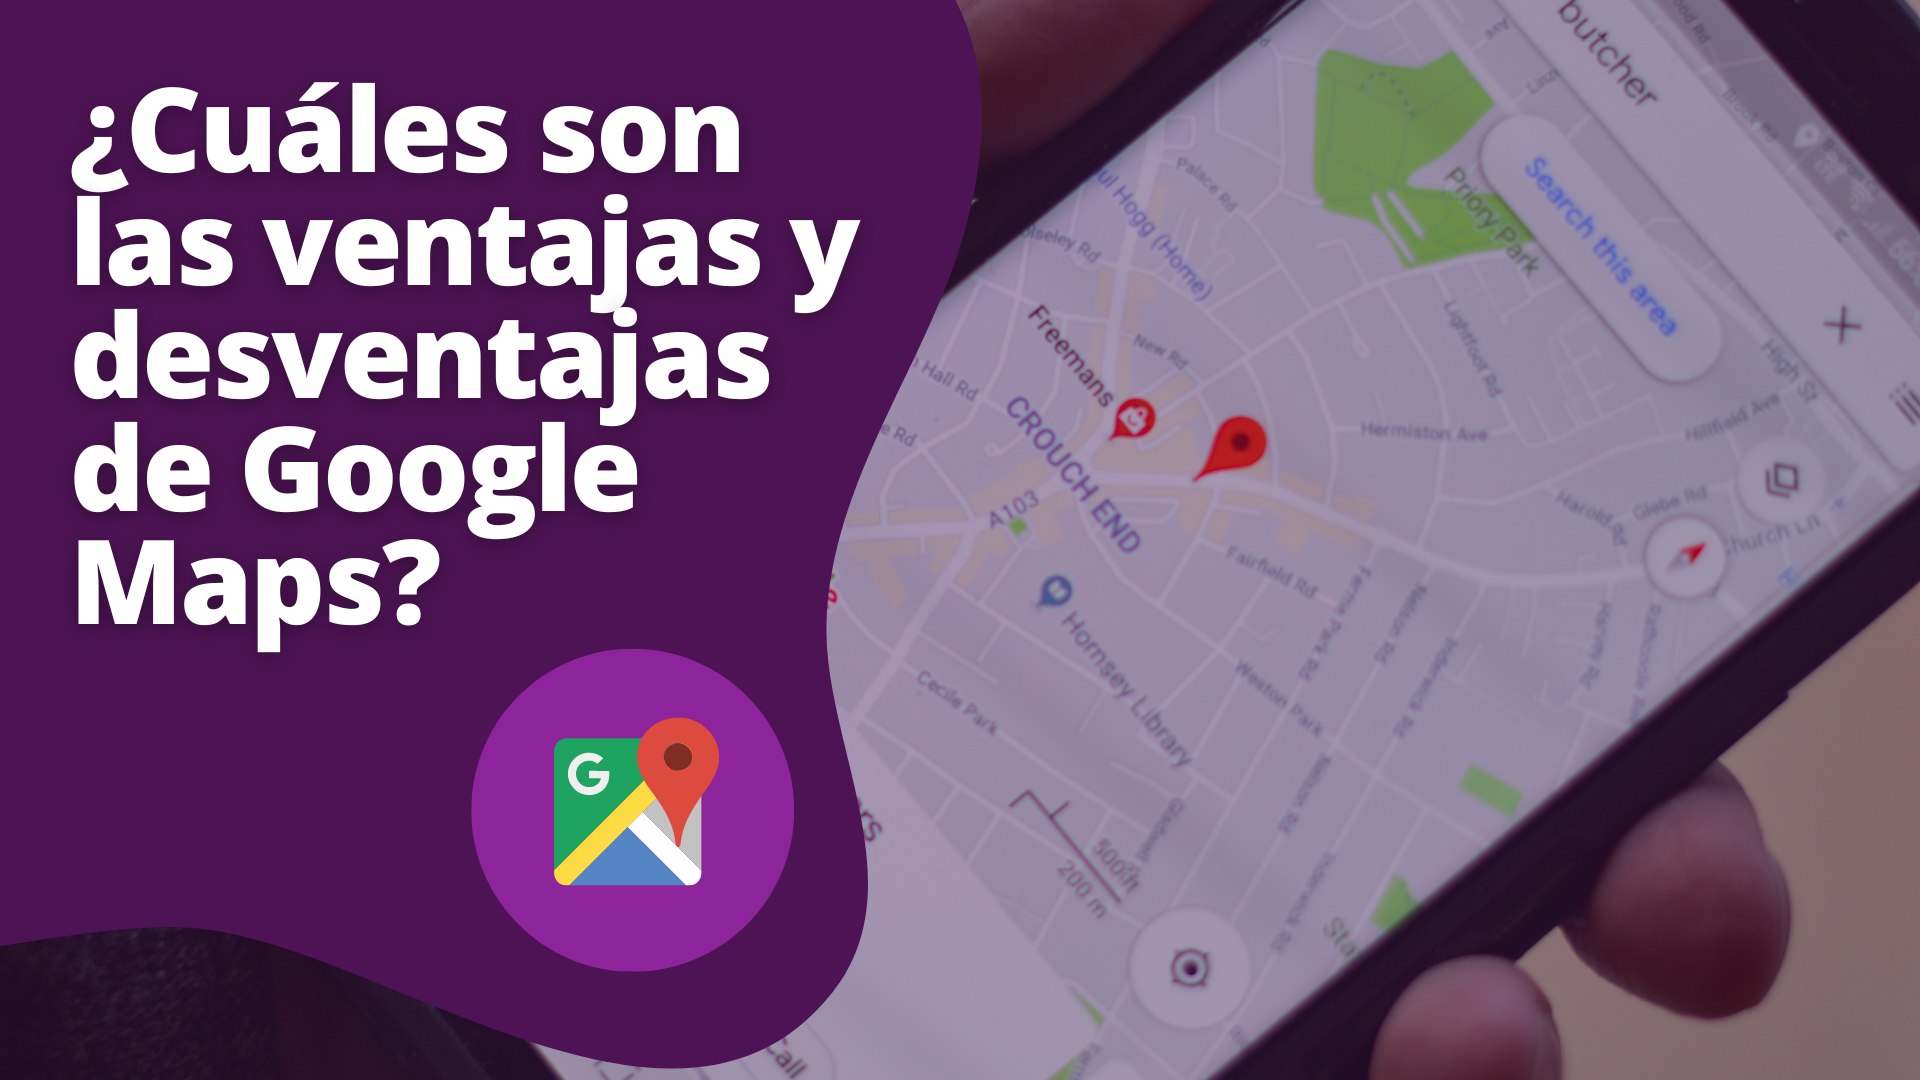 Cu Les Son Las Ventajas Y Desventajas De Google Maps